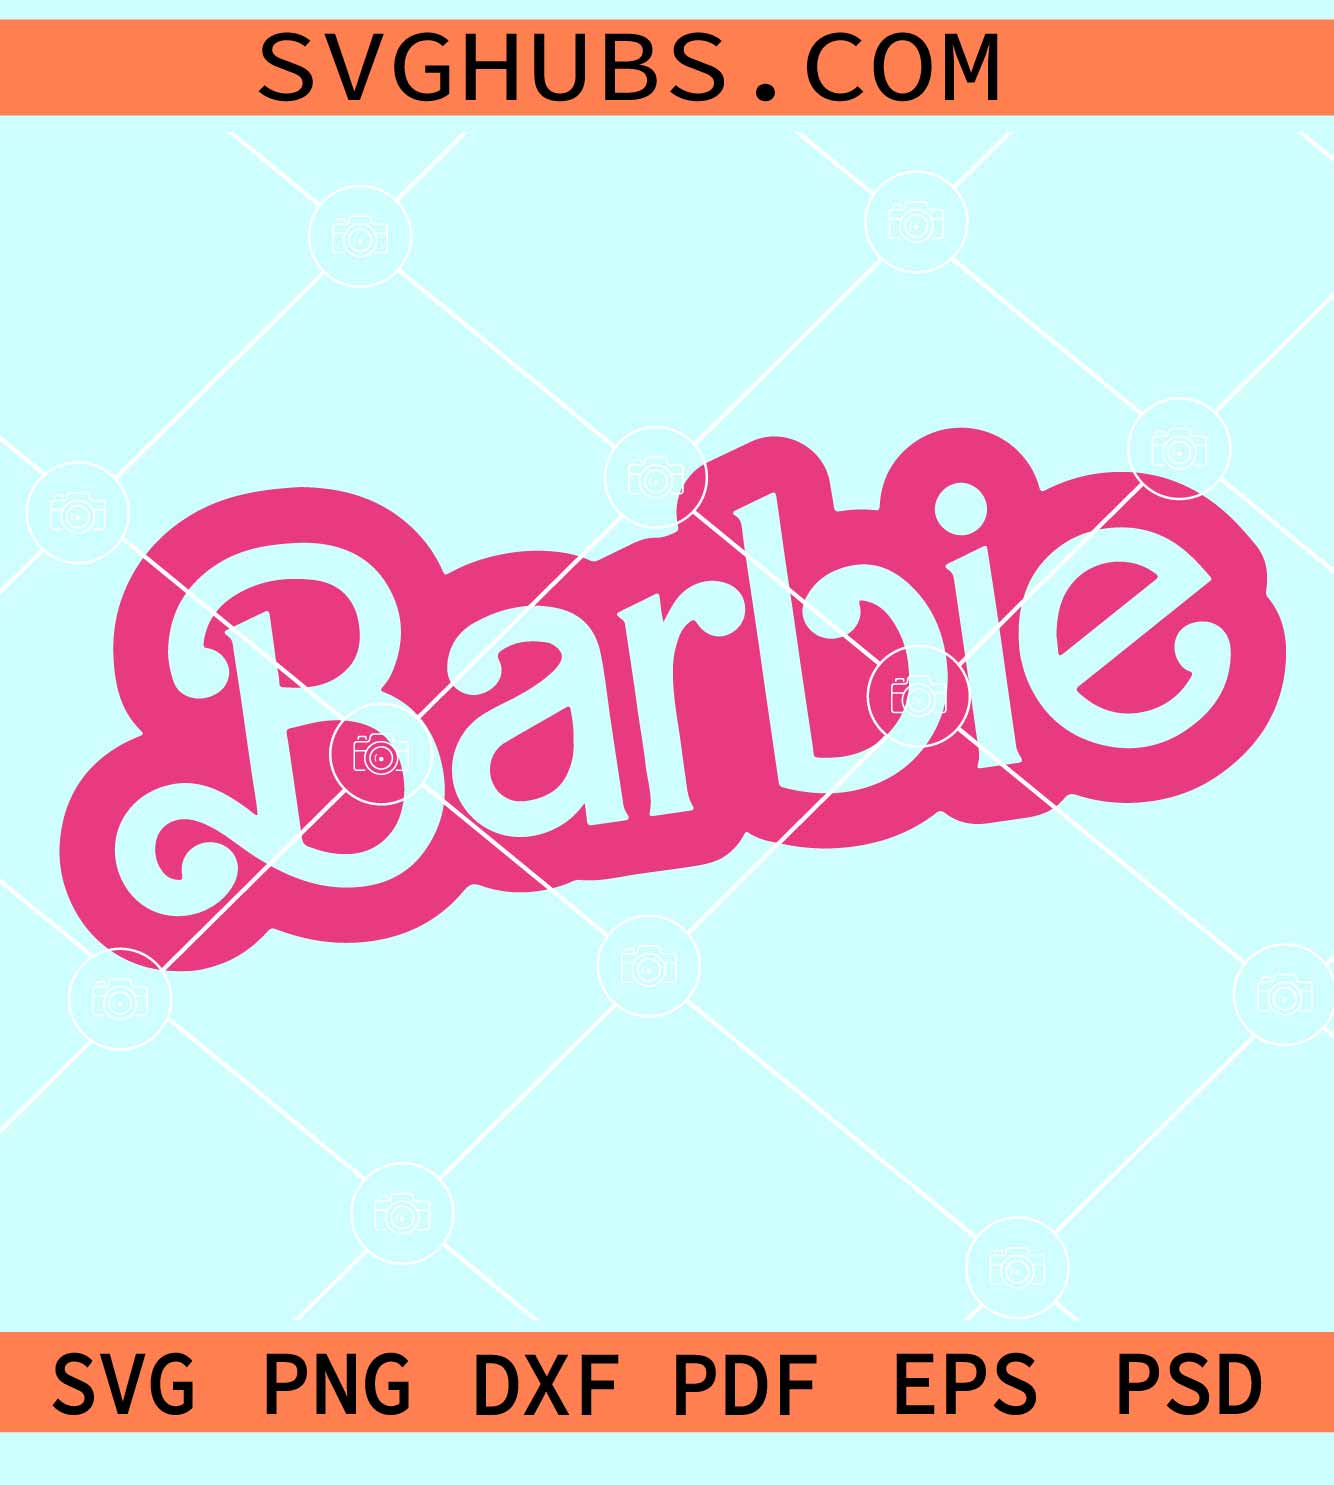 Barbie SVG, Barbie font Svg, Barbie logo svg, Barbie logo PNG,